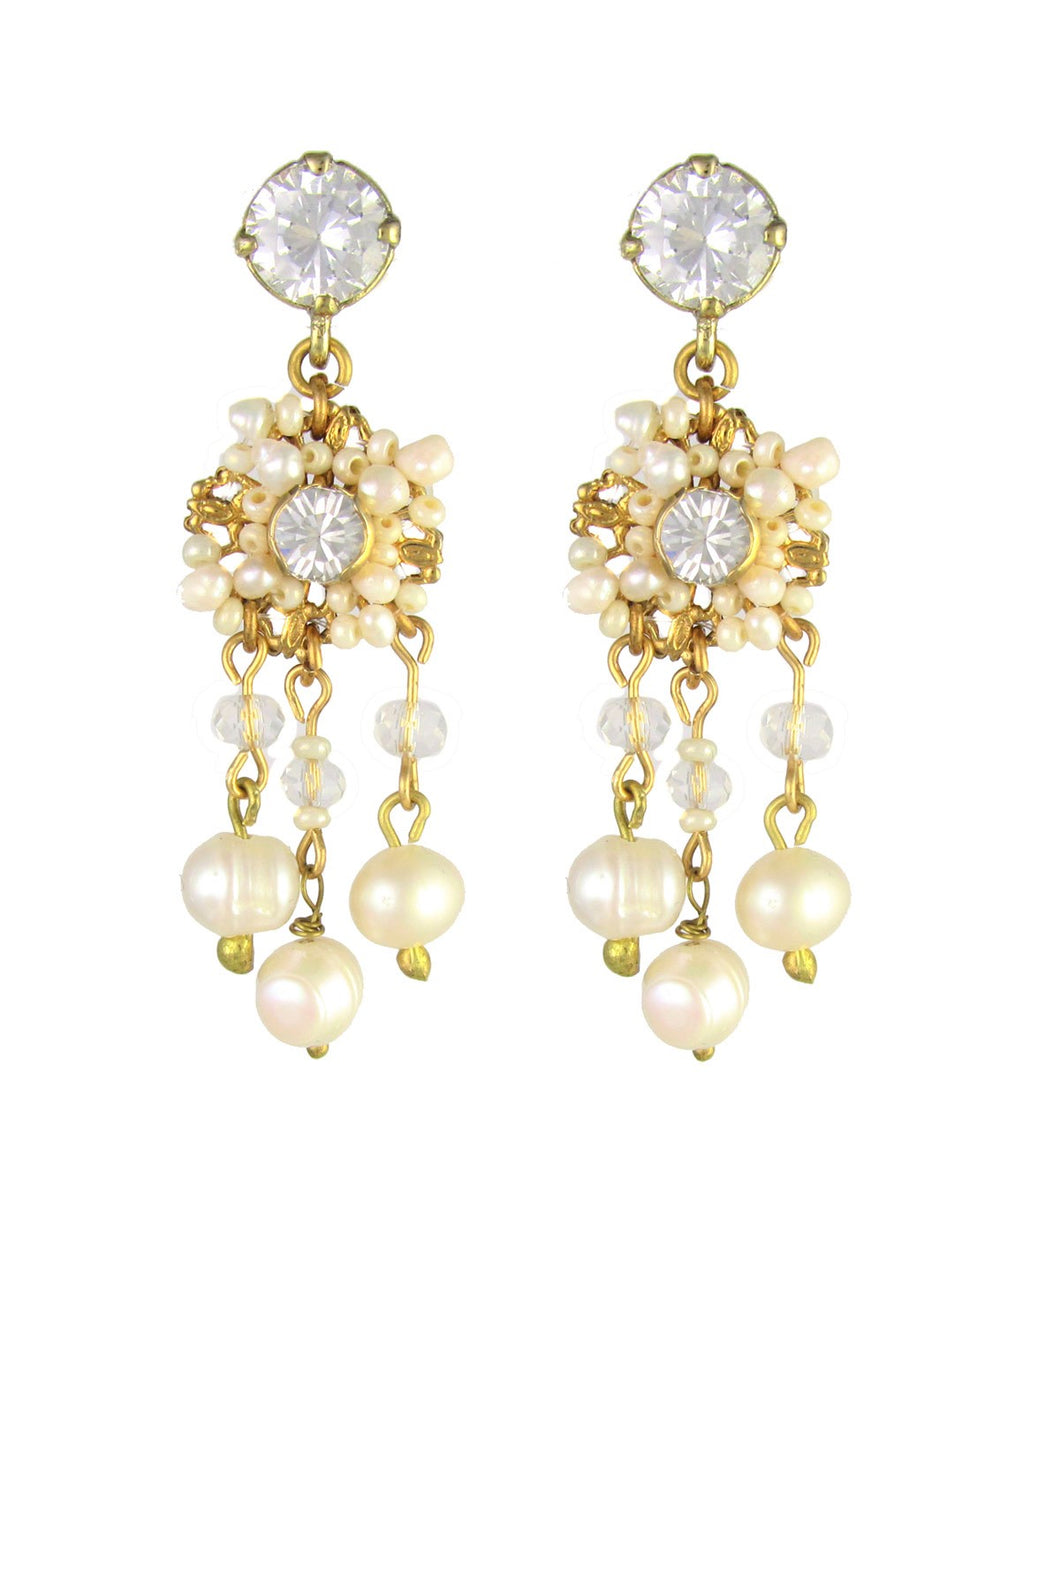 Adeline Swarovski crystals Freshwater Pearls Earrings